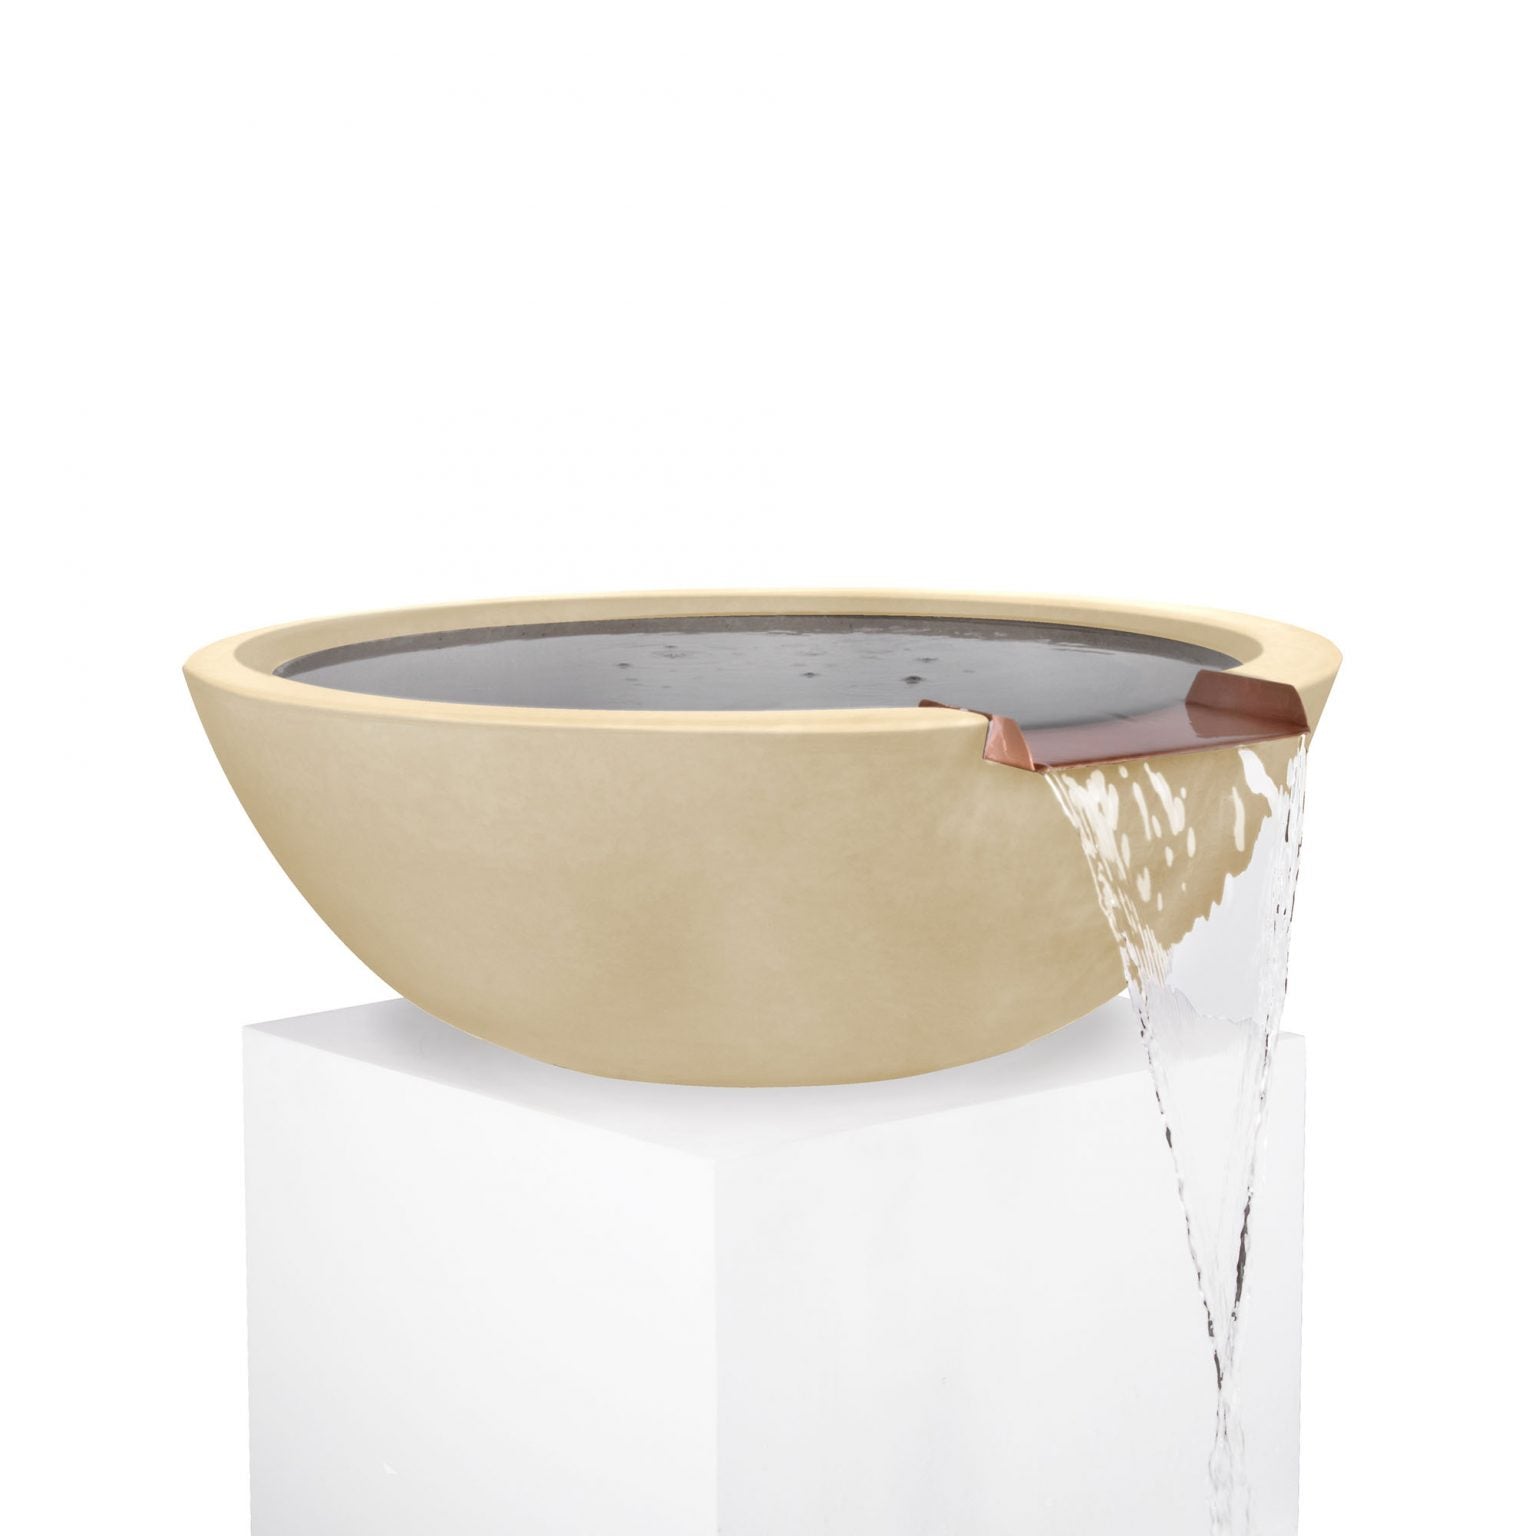 The Outdoor Plus Sedona Water Bowl GFRC Concrete OPT-XXRWO - Serenity Provision